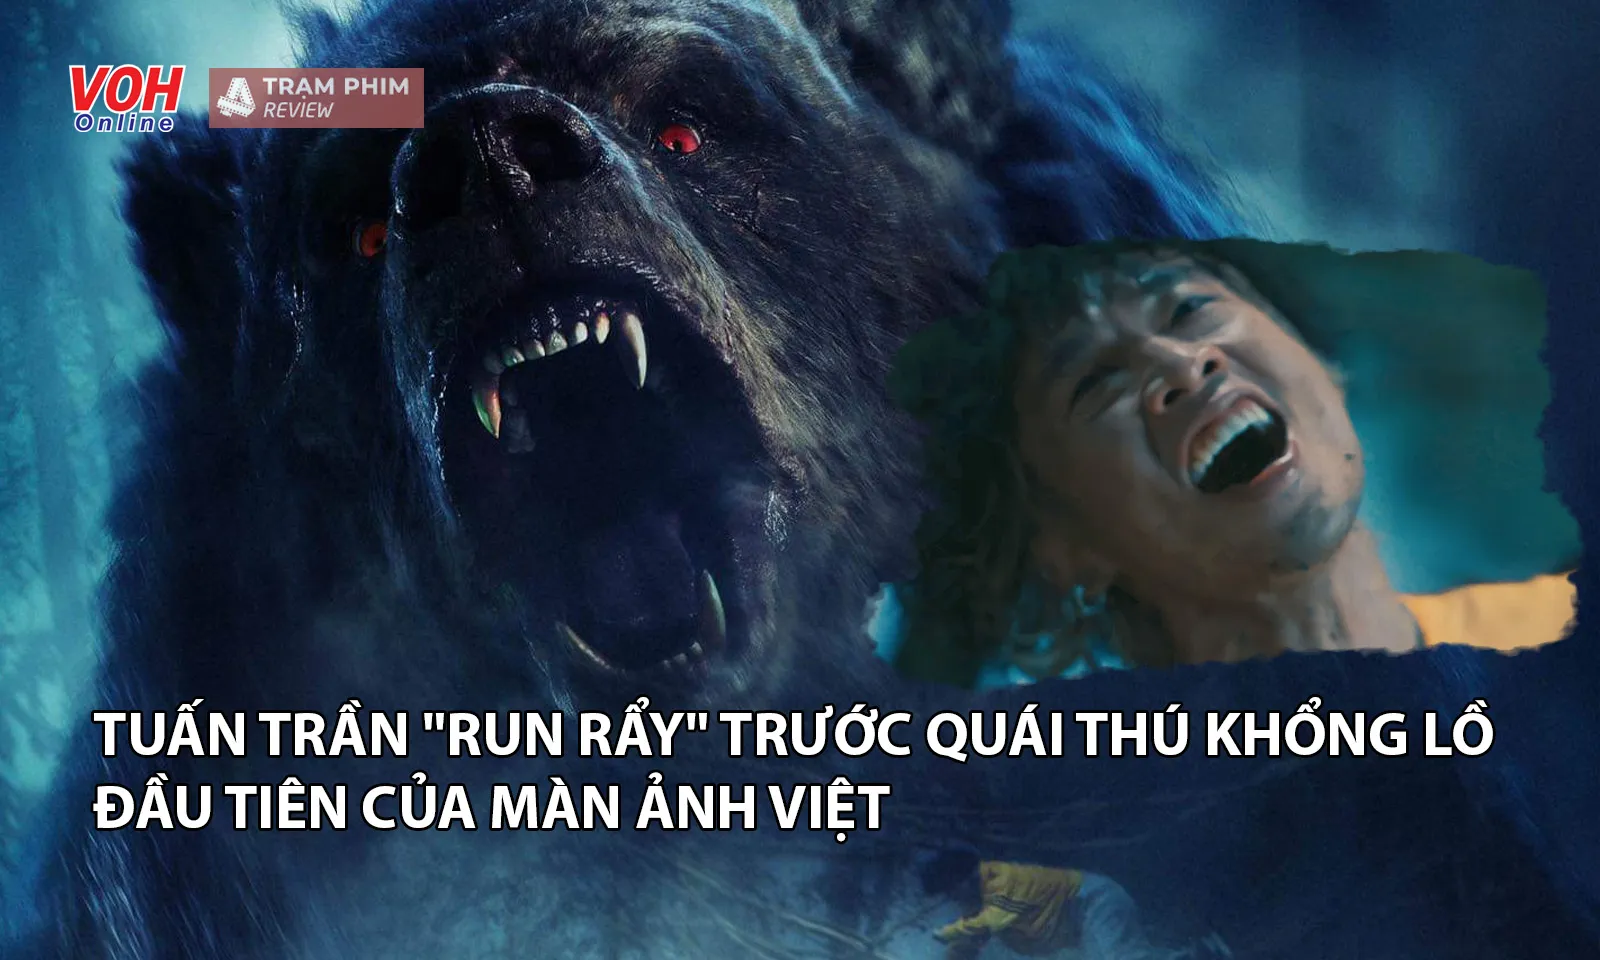 Tuấn Trần run rẩy trước quái thú khổng lồ đầu tiên của màn ảnh Việt